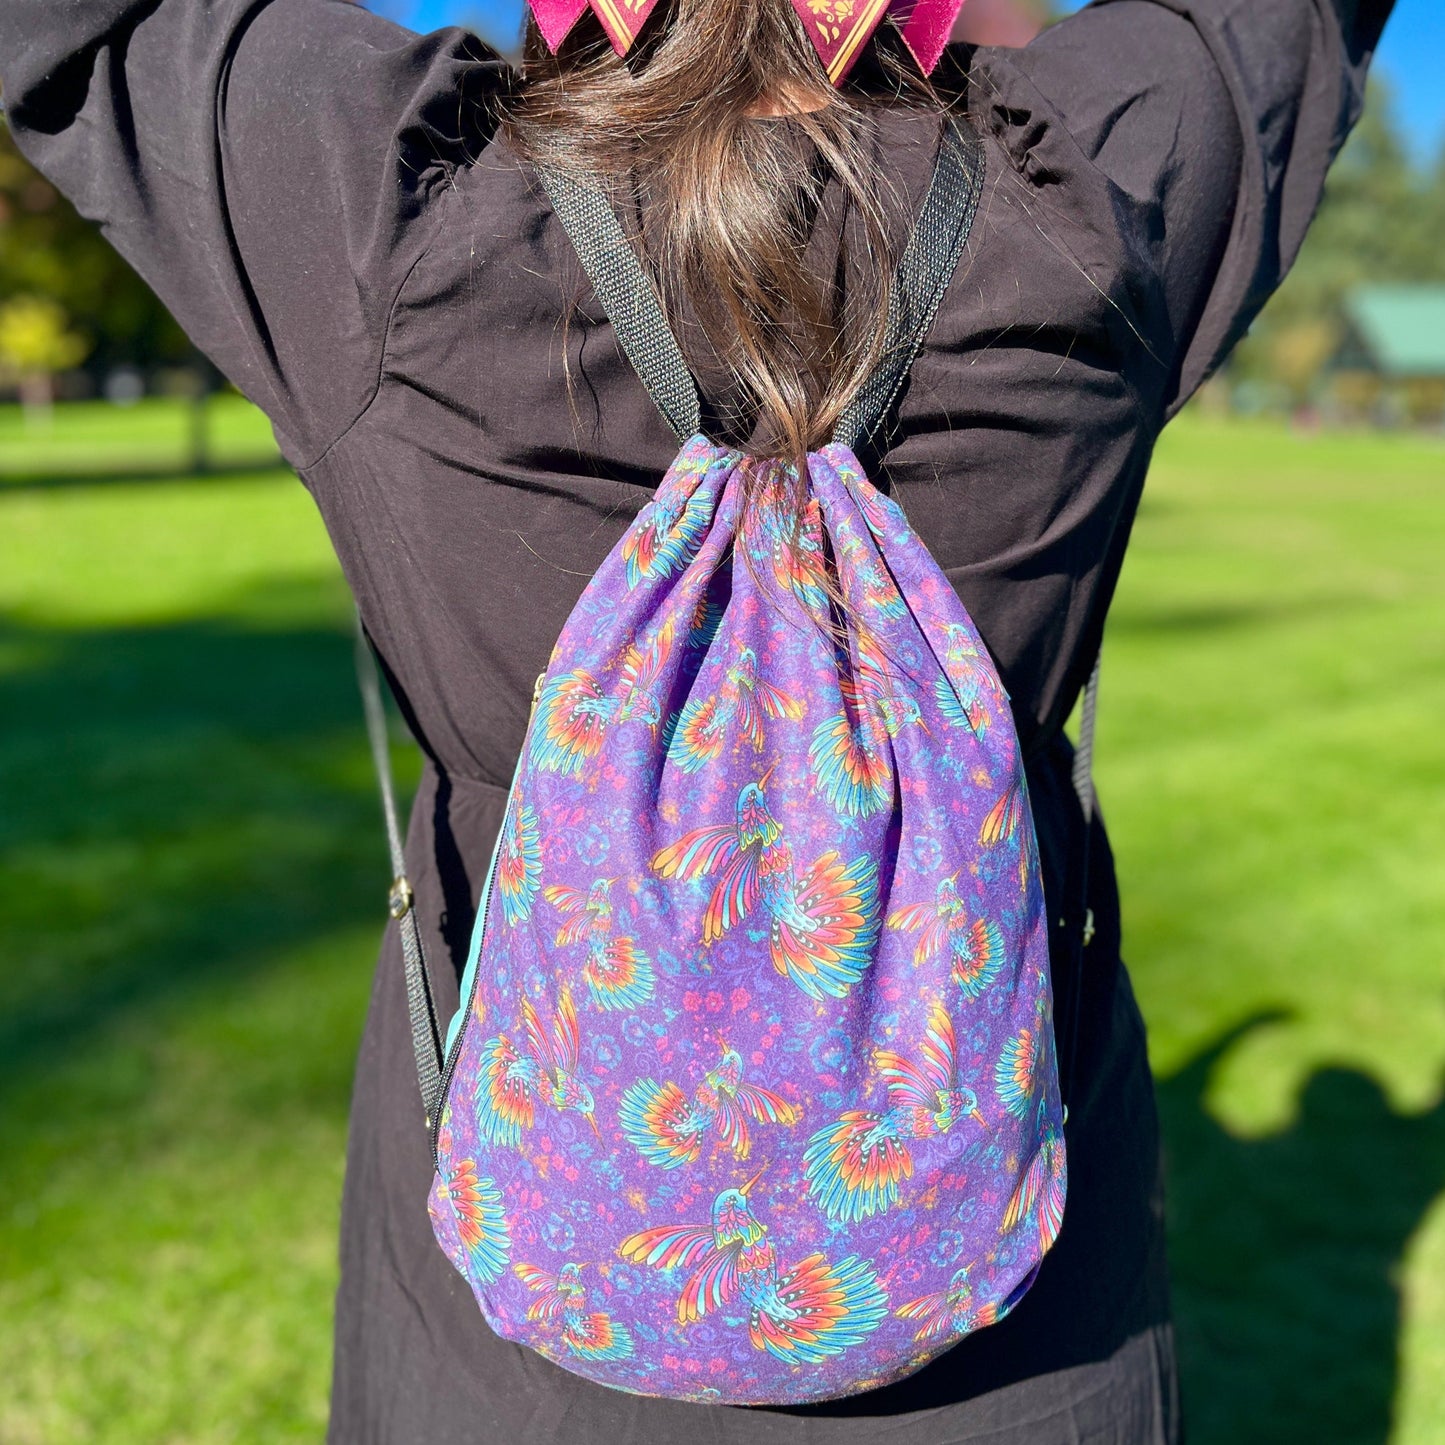 Hummingbird pattern 2 in 1: Blanket-Backpack